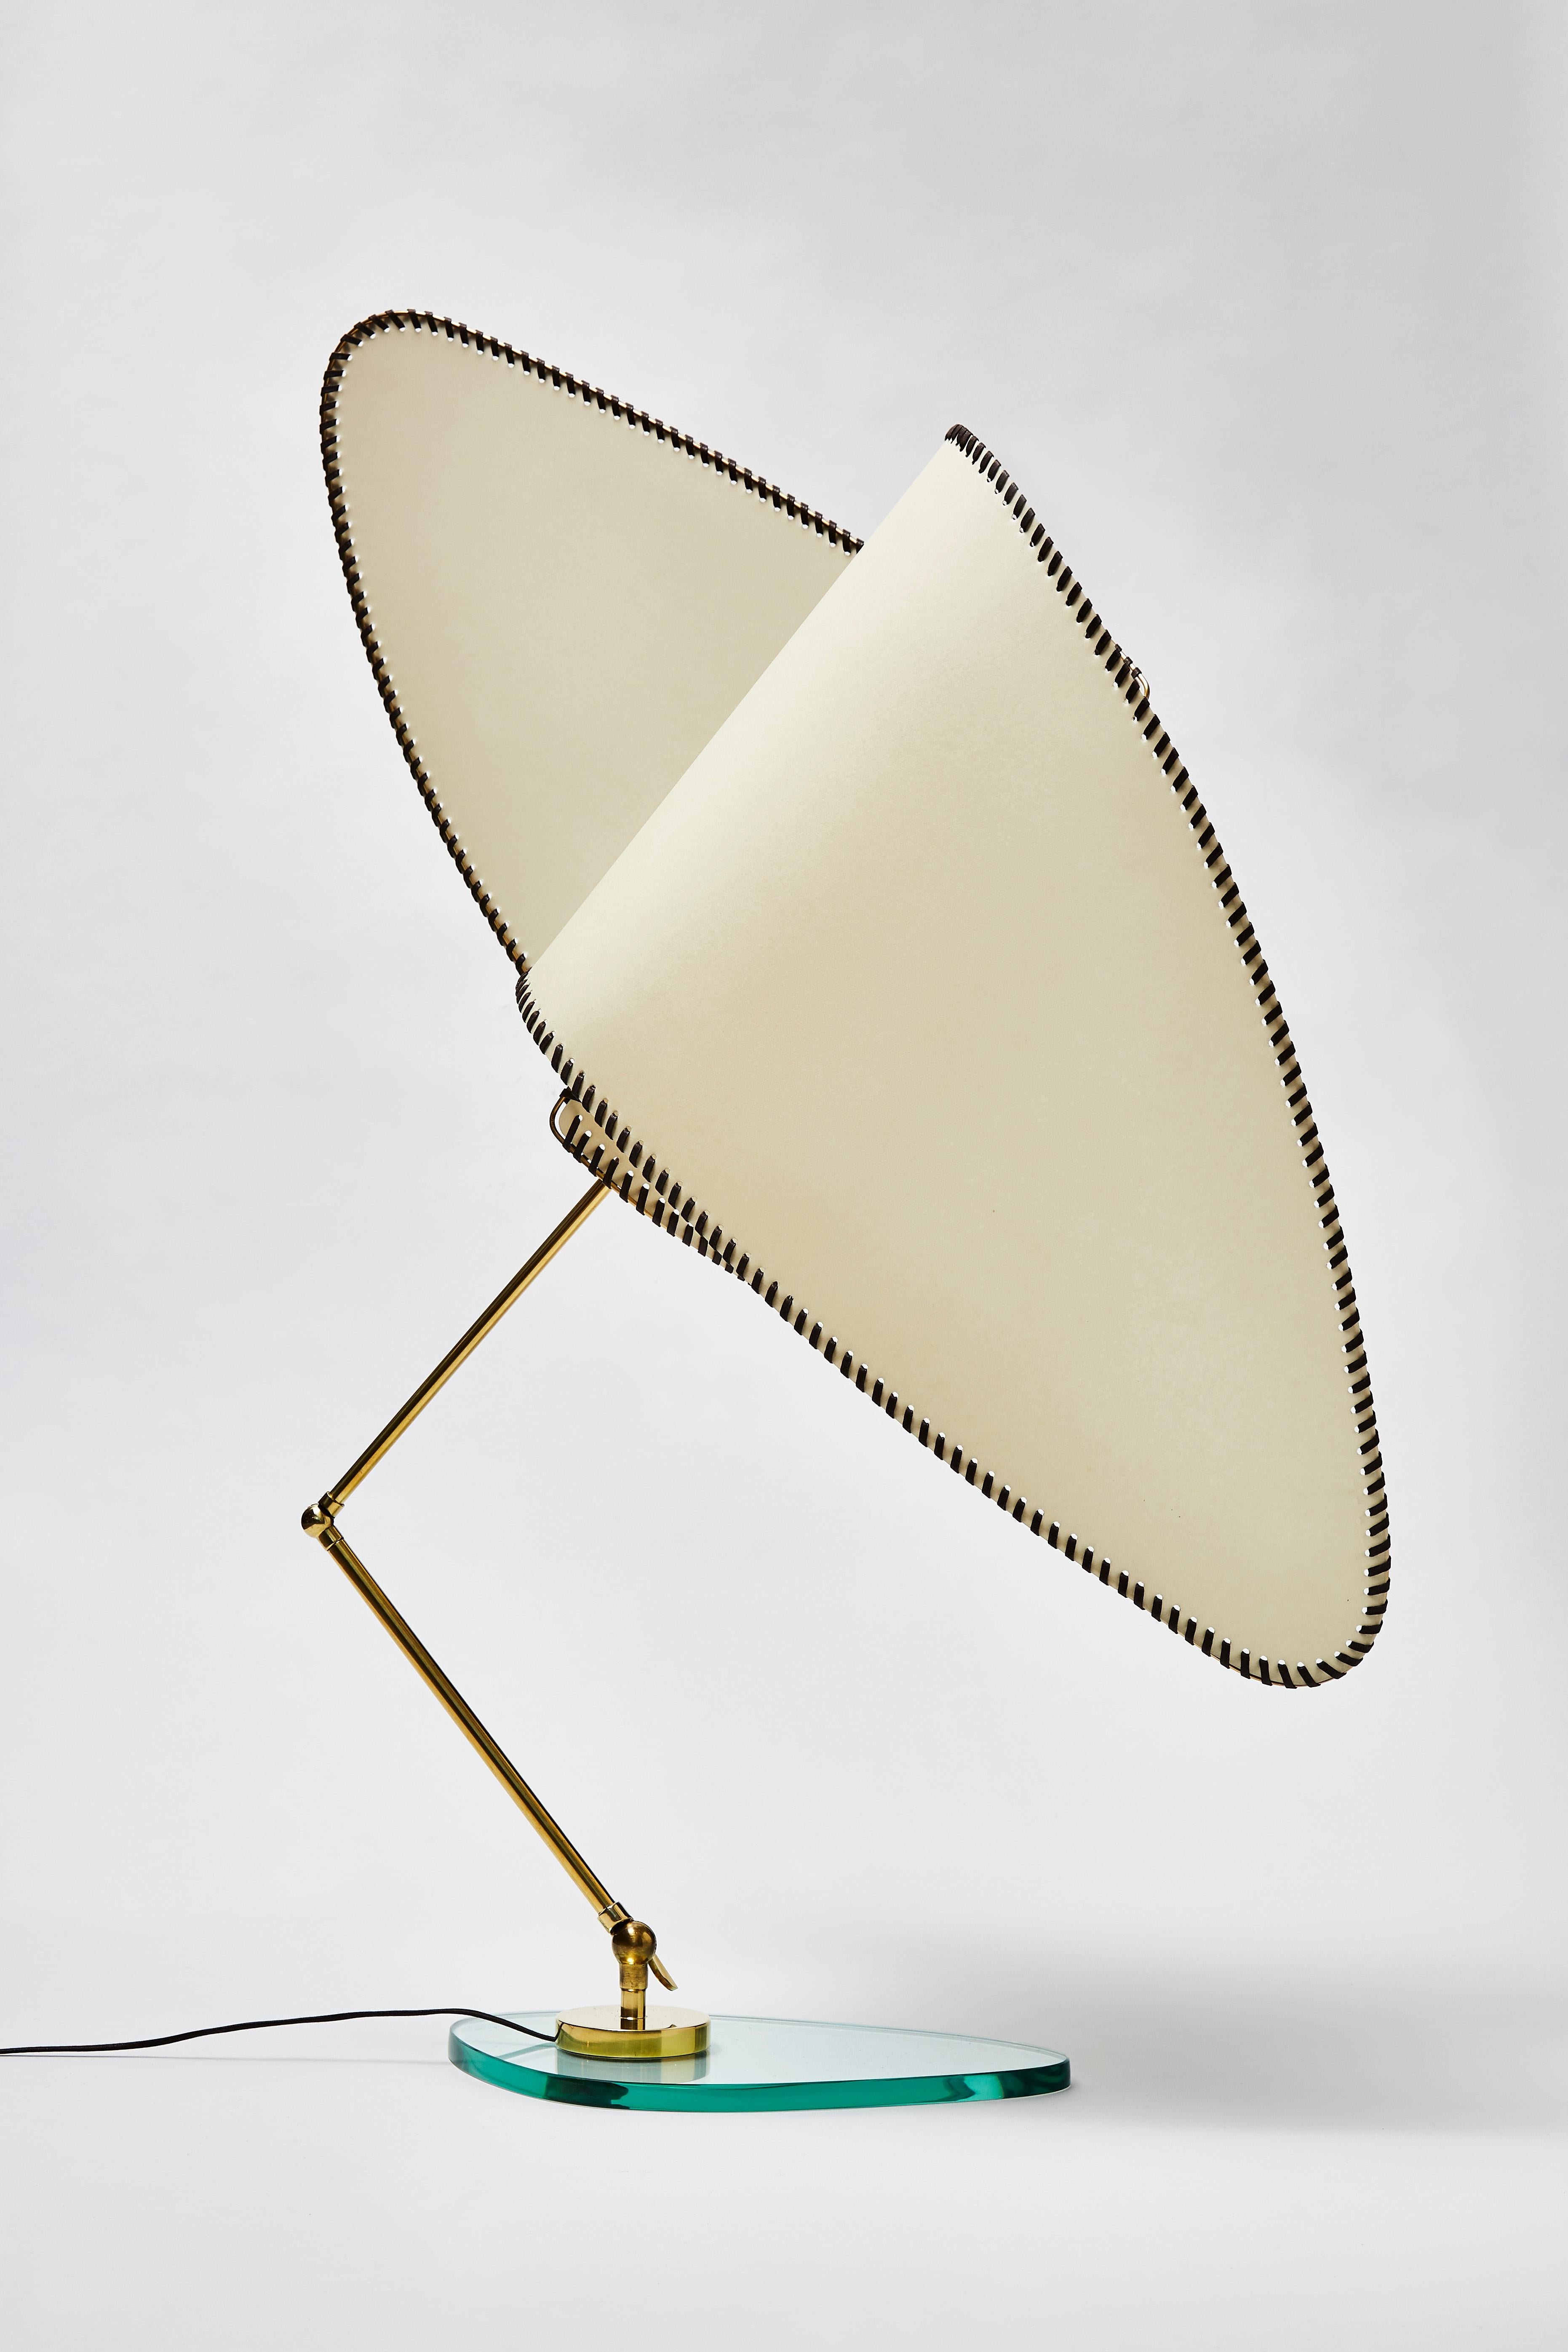 Lampe de table Ventola de l'artiste Diego Mardegan en exclusivité pour Glustin Luminaires.

Magnifique abat-jour à deux voies composé d'une structure en laiton, de papier parchemin et de toile cirée maintenu par un bras articulé en laiton attaché